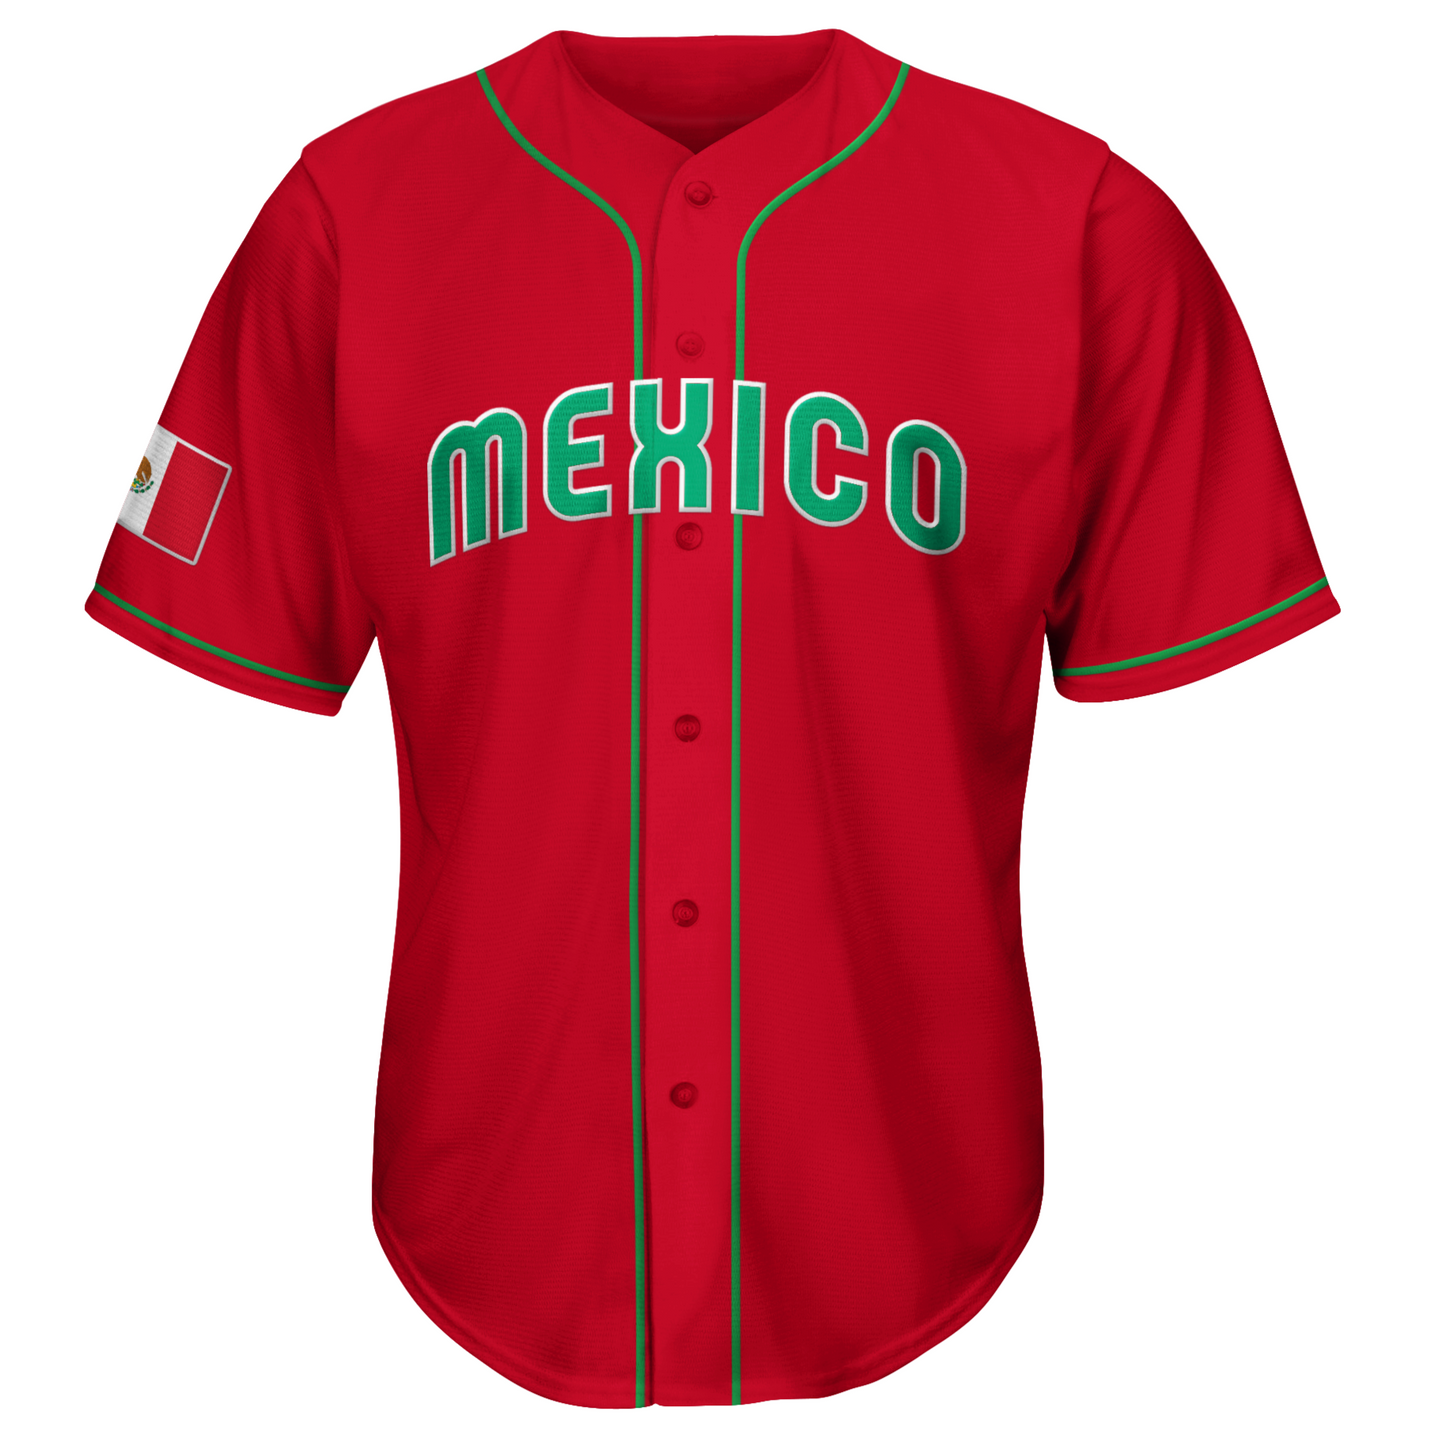 Mexico Baseball Jersey